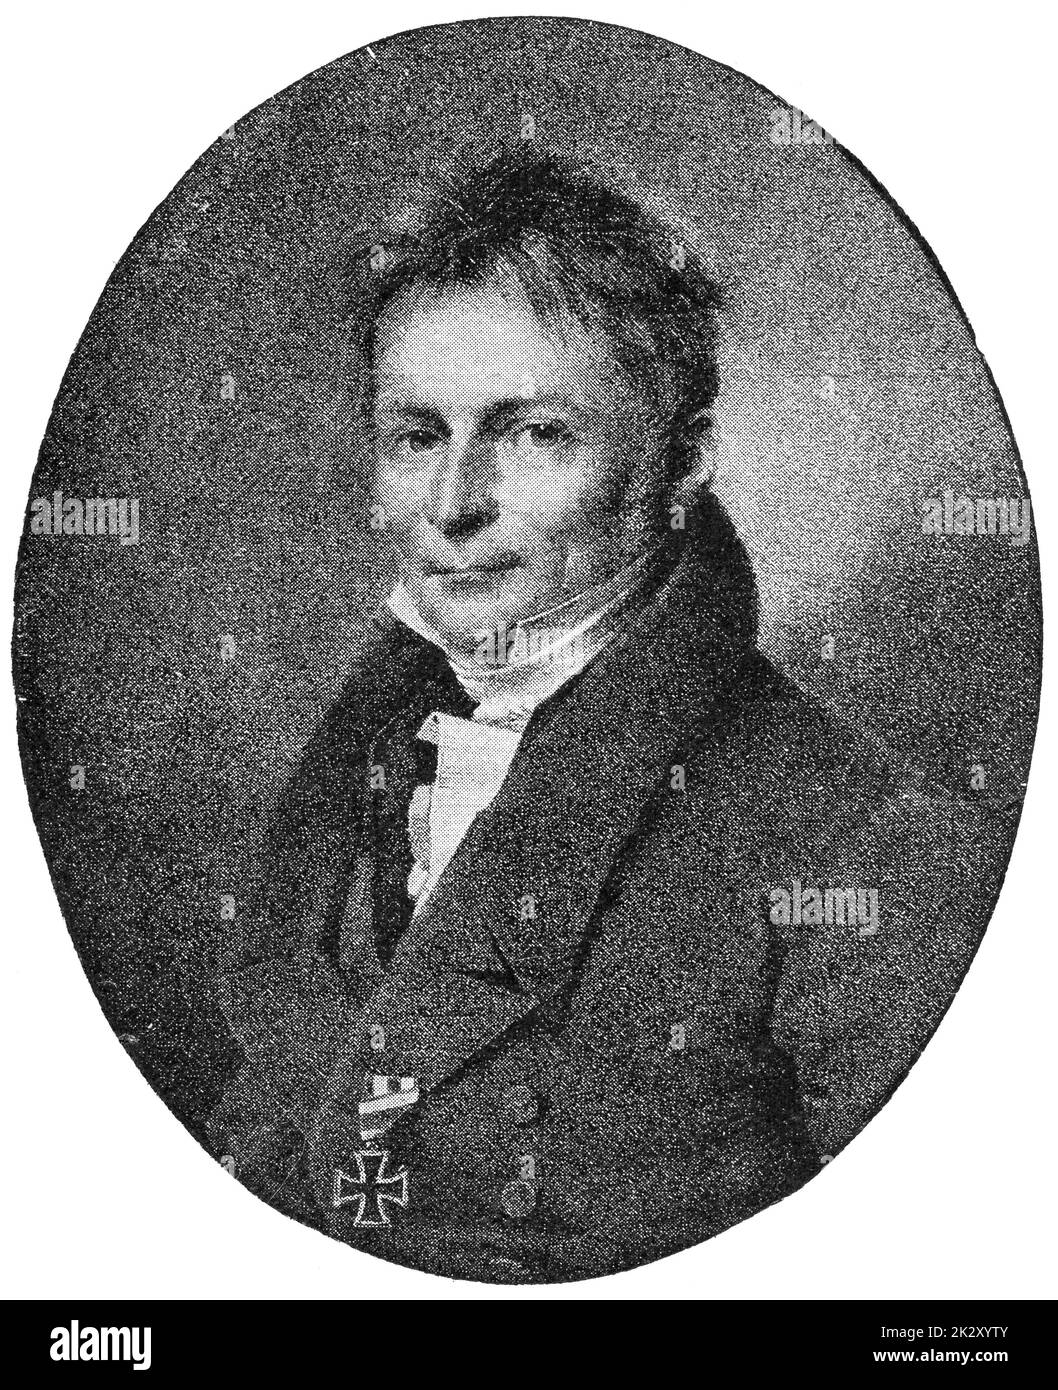 Portrait d'Henrik Steffens - un philosophe, scientifique et poète allemand. Illustration du 19e siècle. Arrière-plan blanc. Banque D'Images